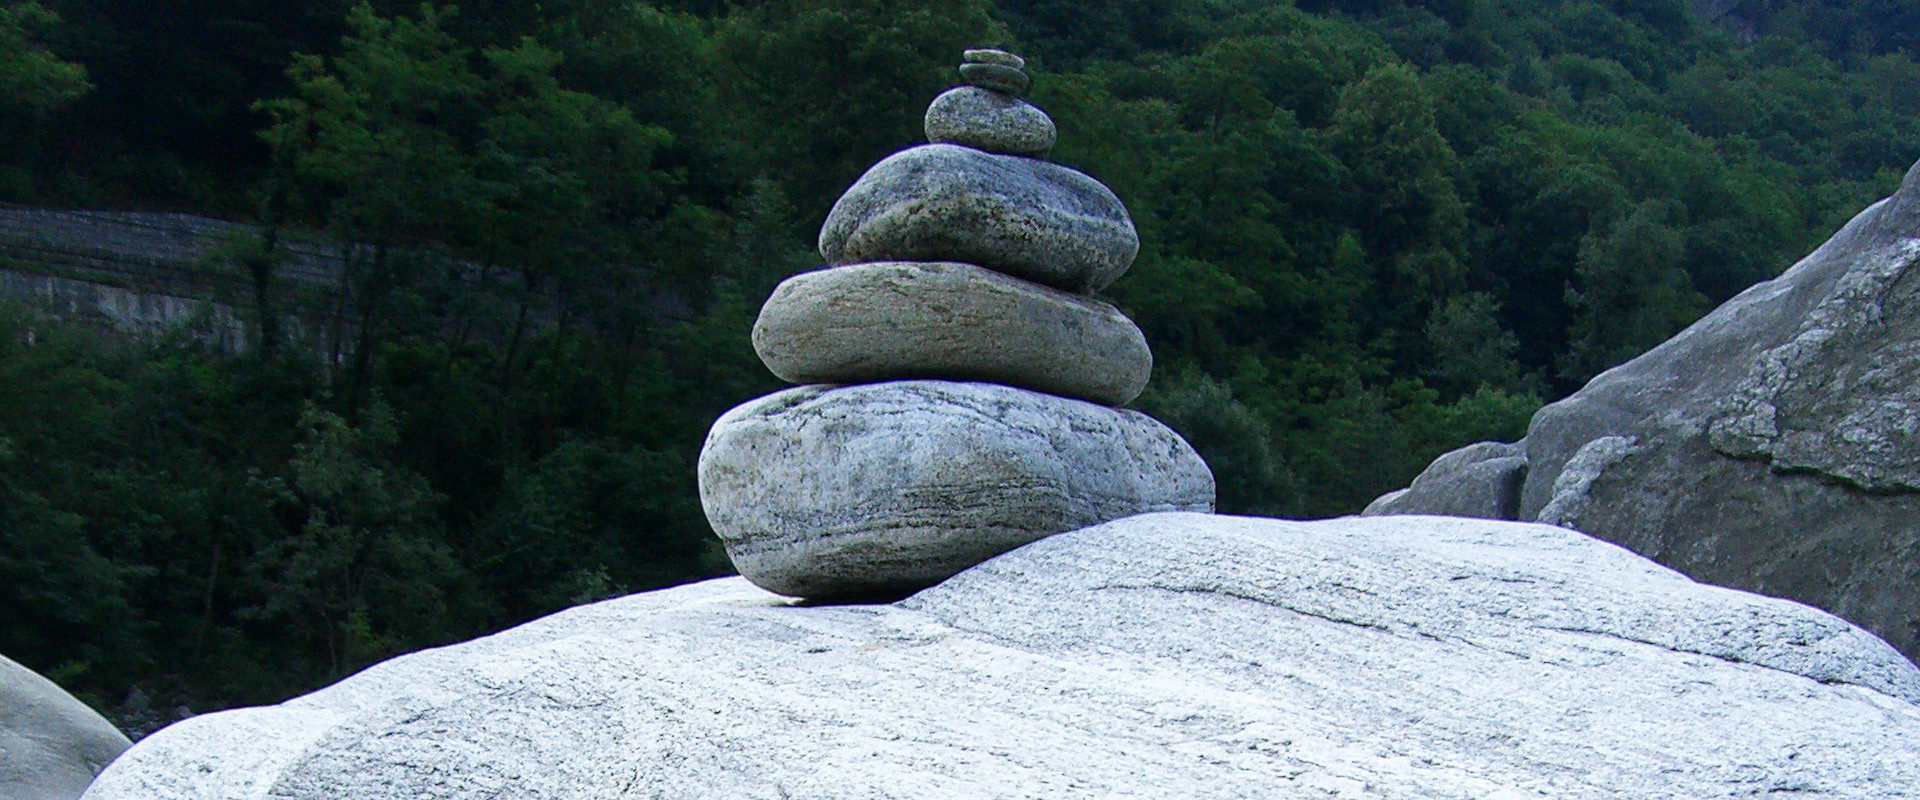 Ein Steinmandl oder Steinmann im Tessin - Landart mit natürlichen Materialien oder ein Wegweiser / Markierung im alpinen Gelände.